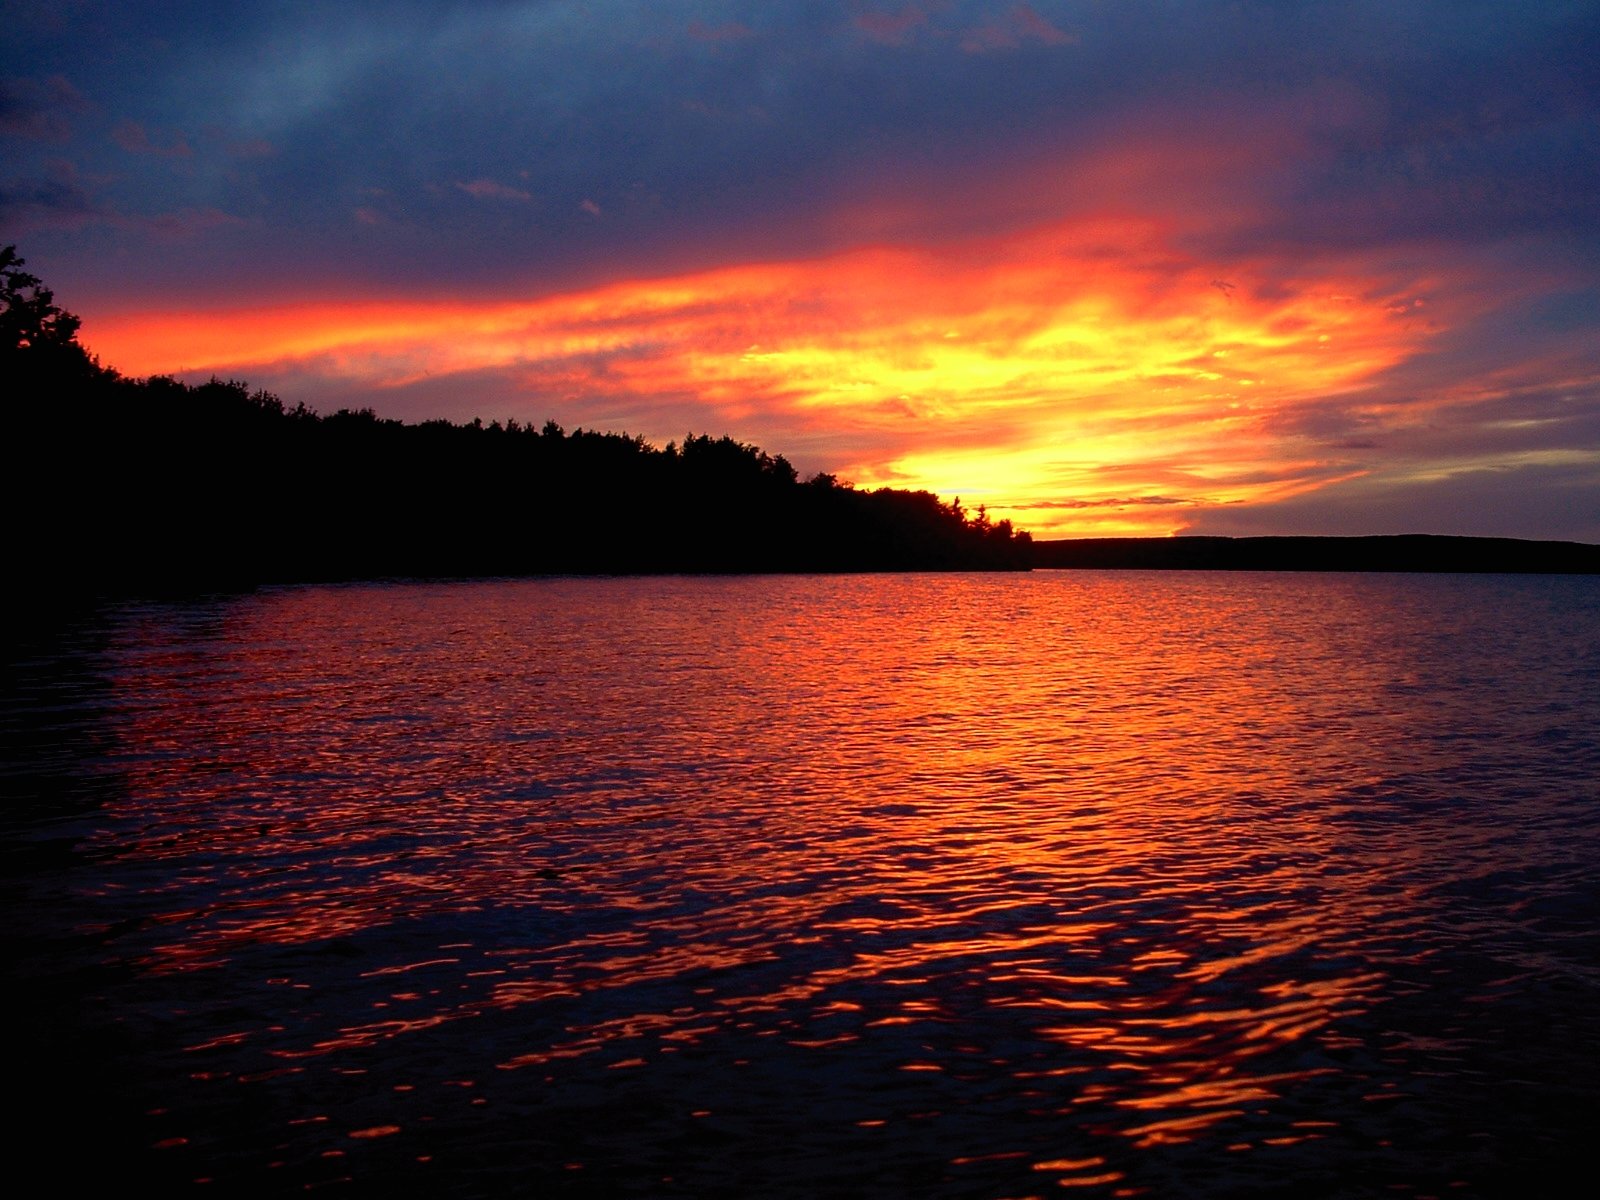 the sun setting on a lake, near an island